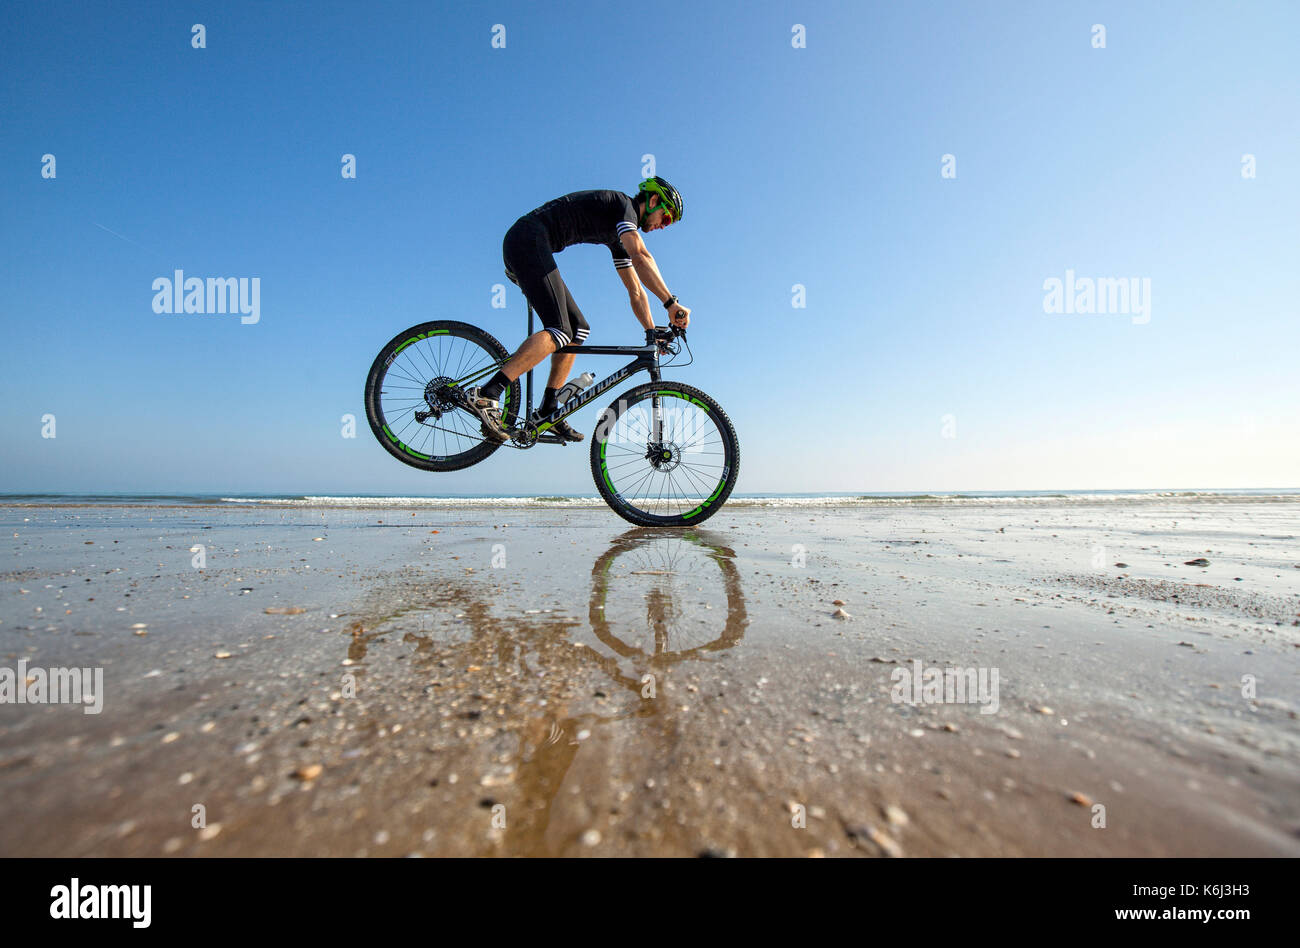 Pierre le Coq effectue un arrêt sur son vélo sur une plage vide à marée basse à Plérin, Bretagne. Banque D'Images